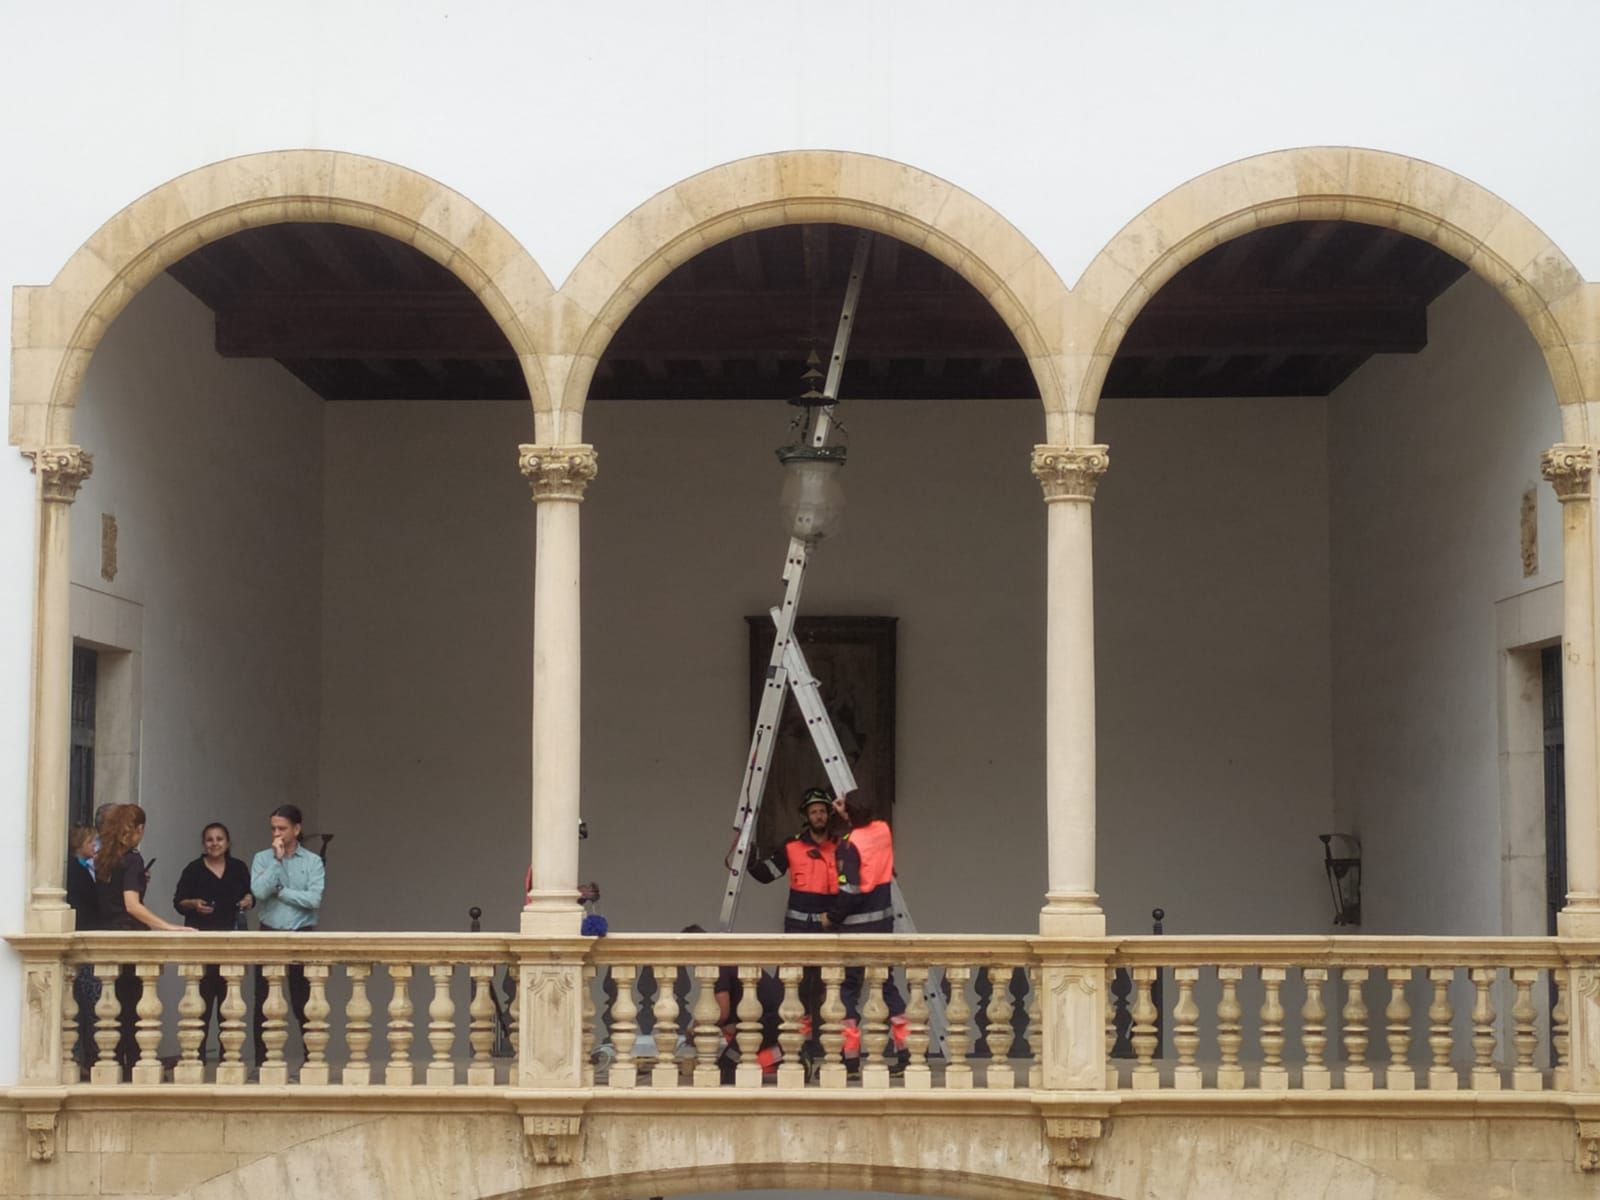 FOTOS | Rescate de un vencejo atrapado en una lámpara en la Audiencia de Palma